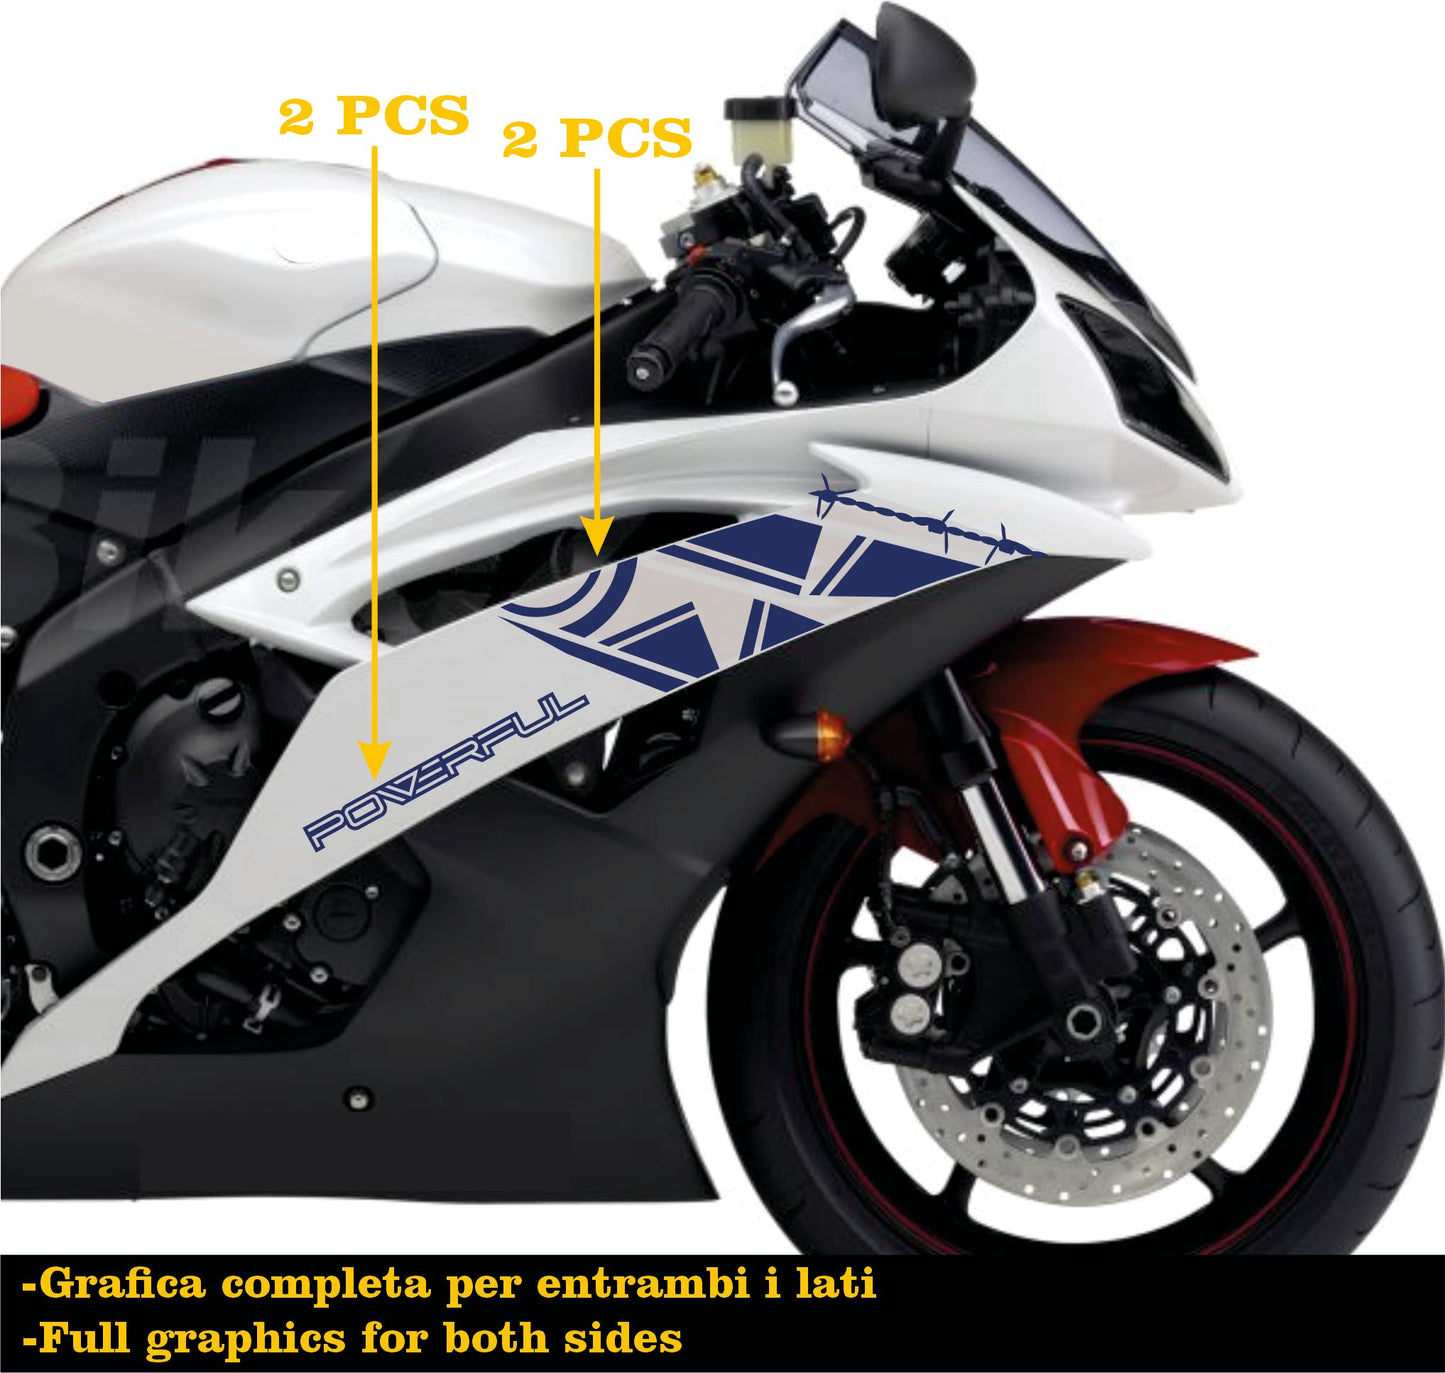 DualColorStampe Adesivi Compatibili con Yamaha R6 ANNO 2008 carena moto accessori stickers Motociclo colore a scelta POWERFUL COD.M0283 a €34.99 solo da DualColorStampe